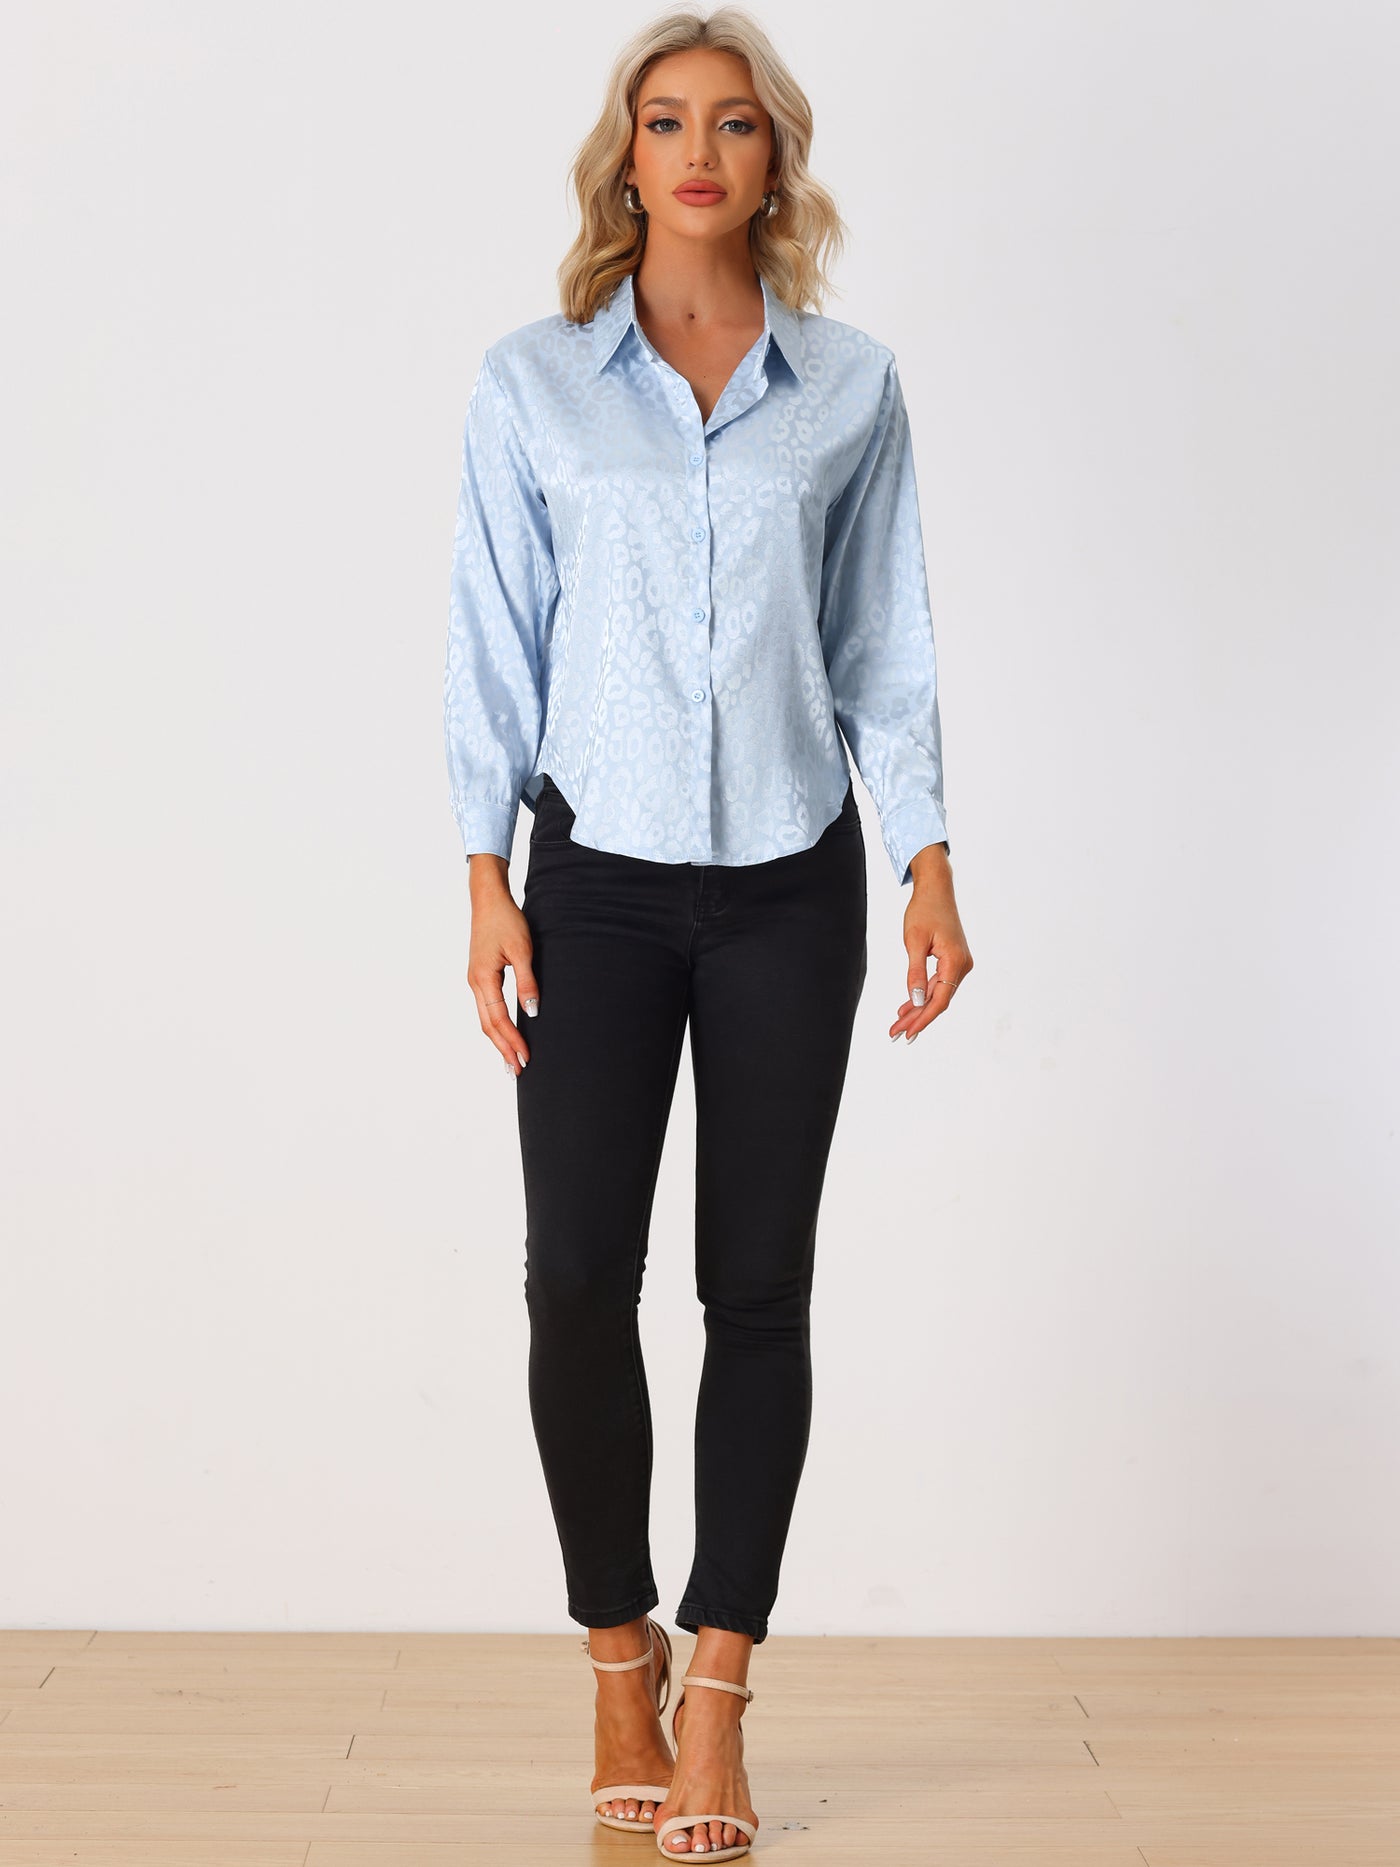 Allegra K Women's Button Down Leopard Print Business Casual Shirt